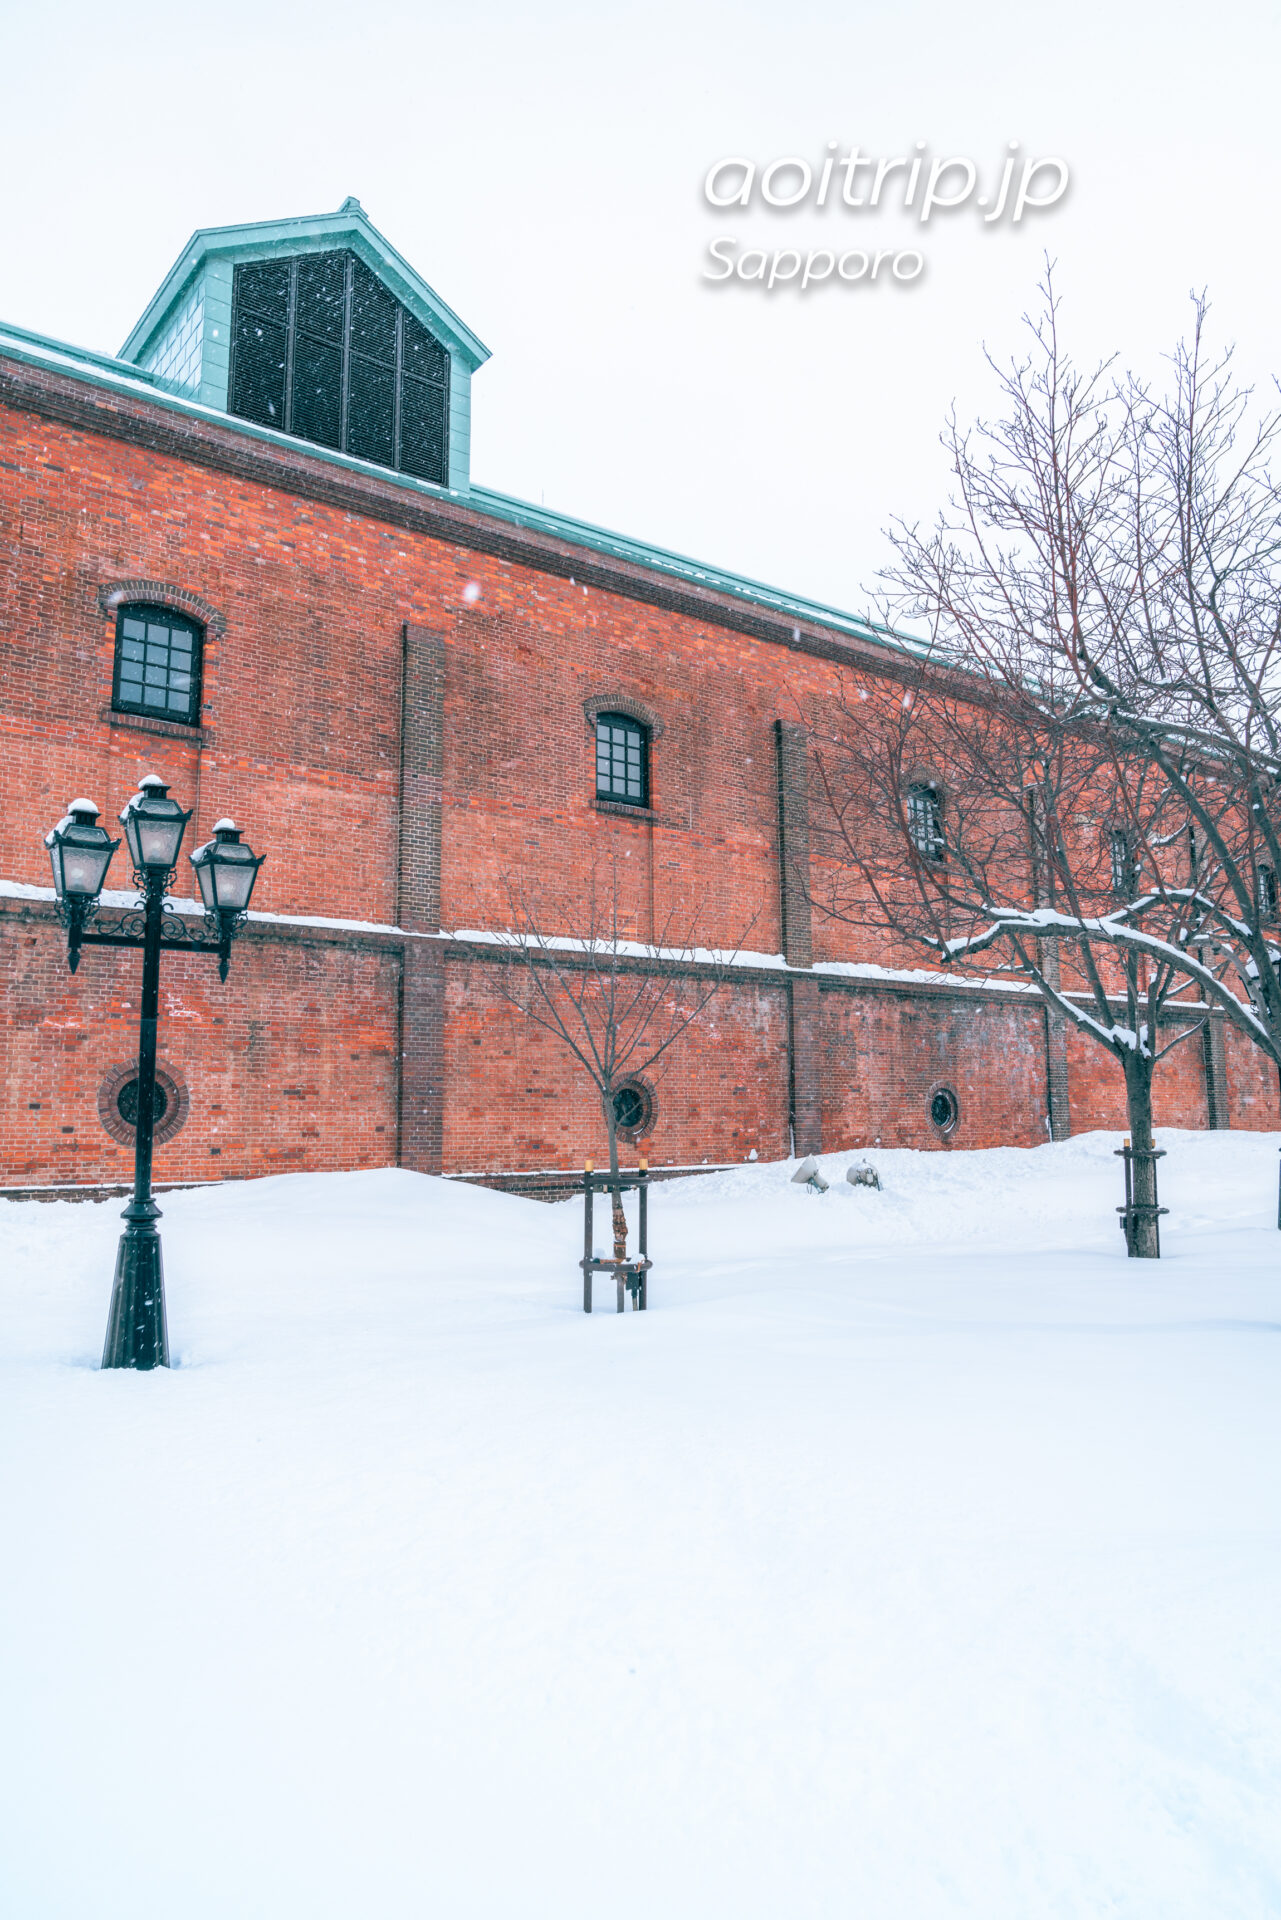 雪の舞う冬のサッポロファクトリー レンガ館